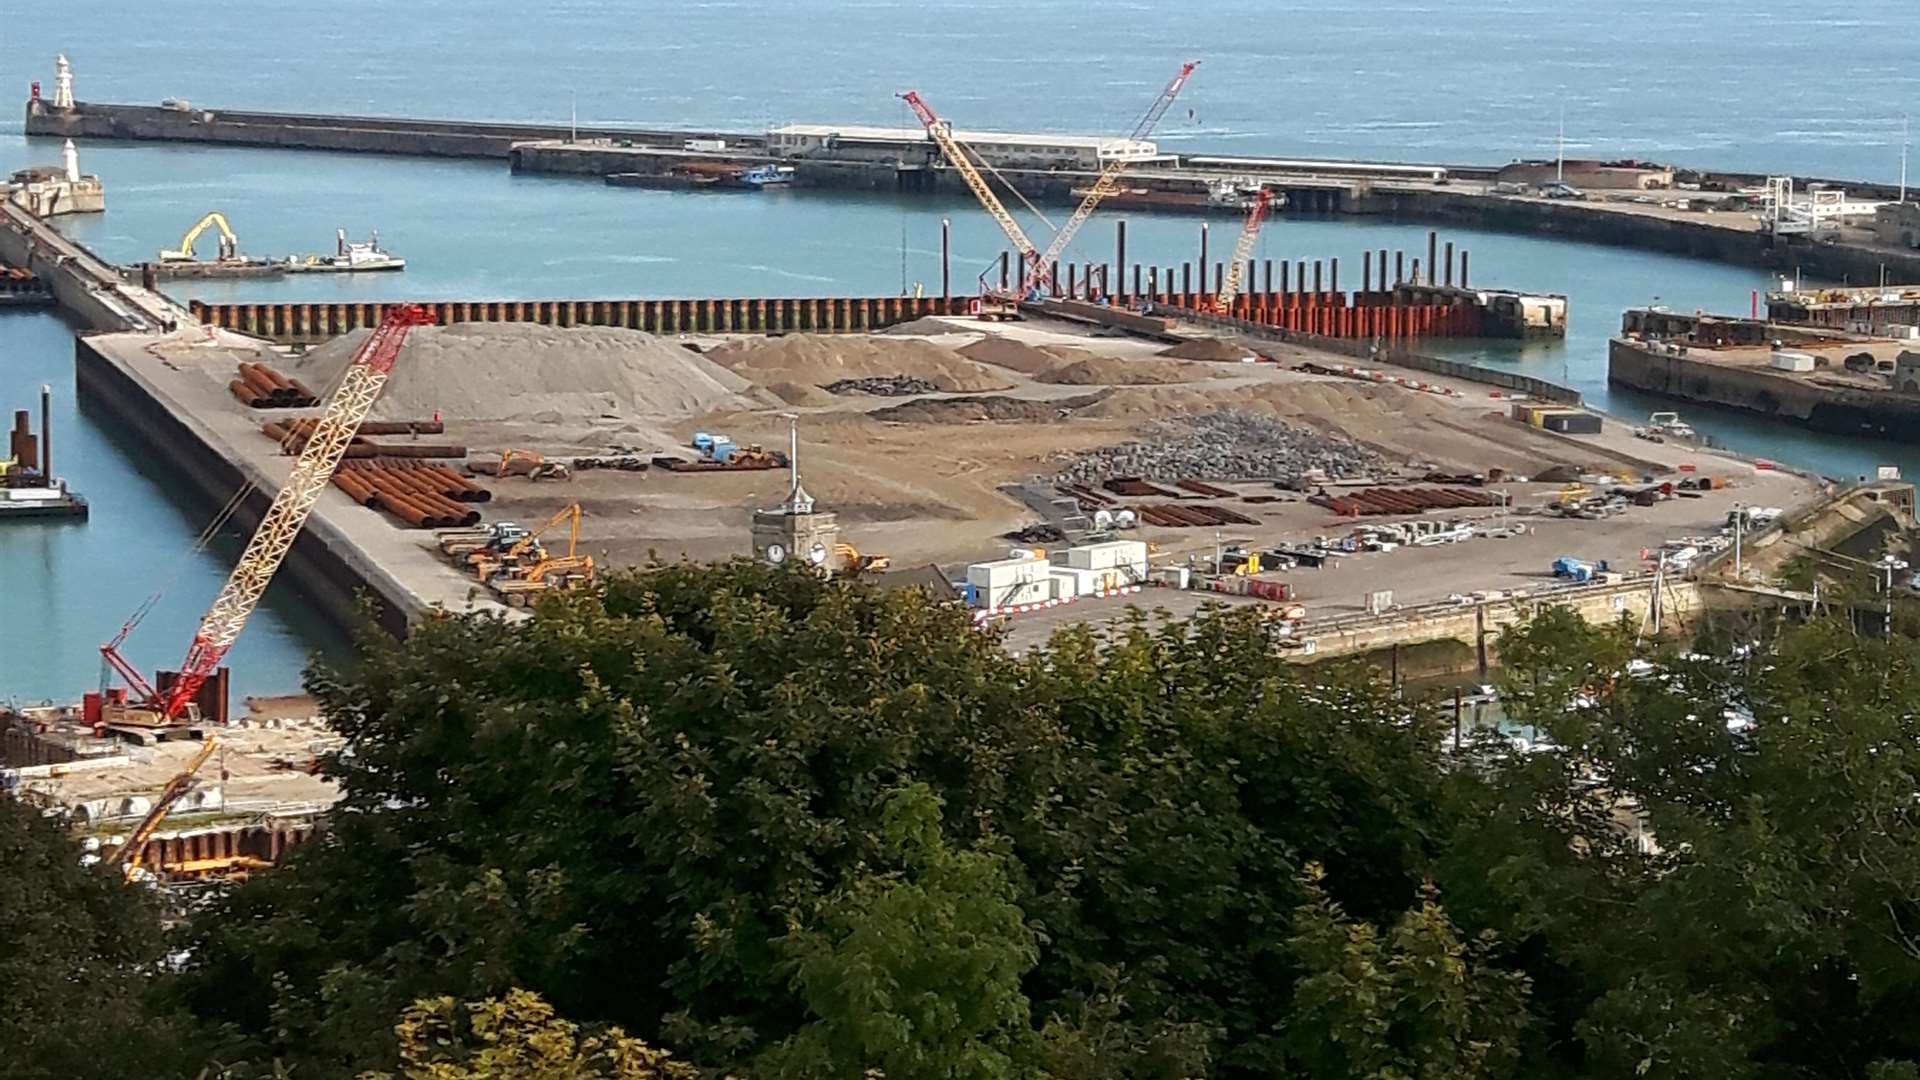 Scene of the Dover Western Docks Revival development site